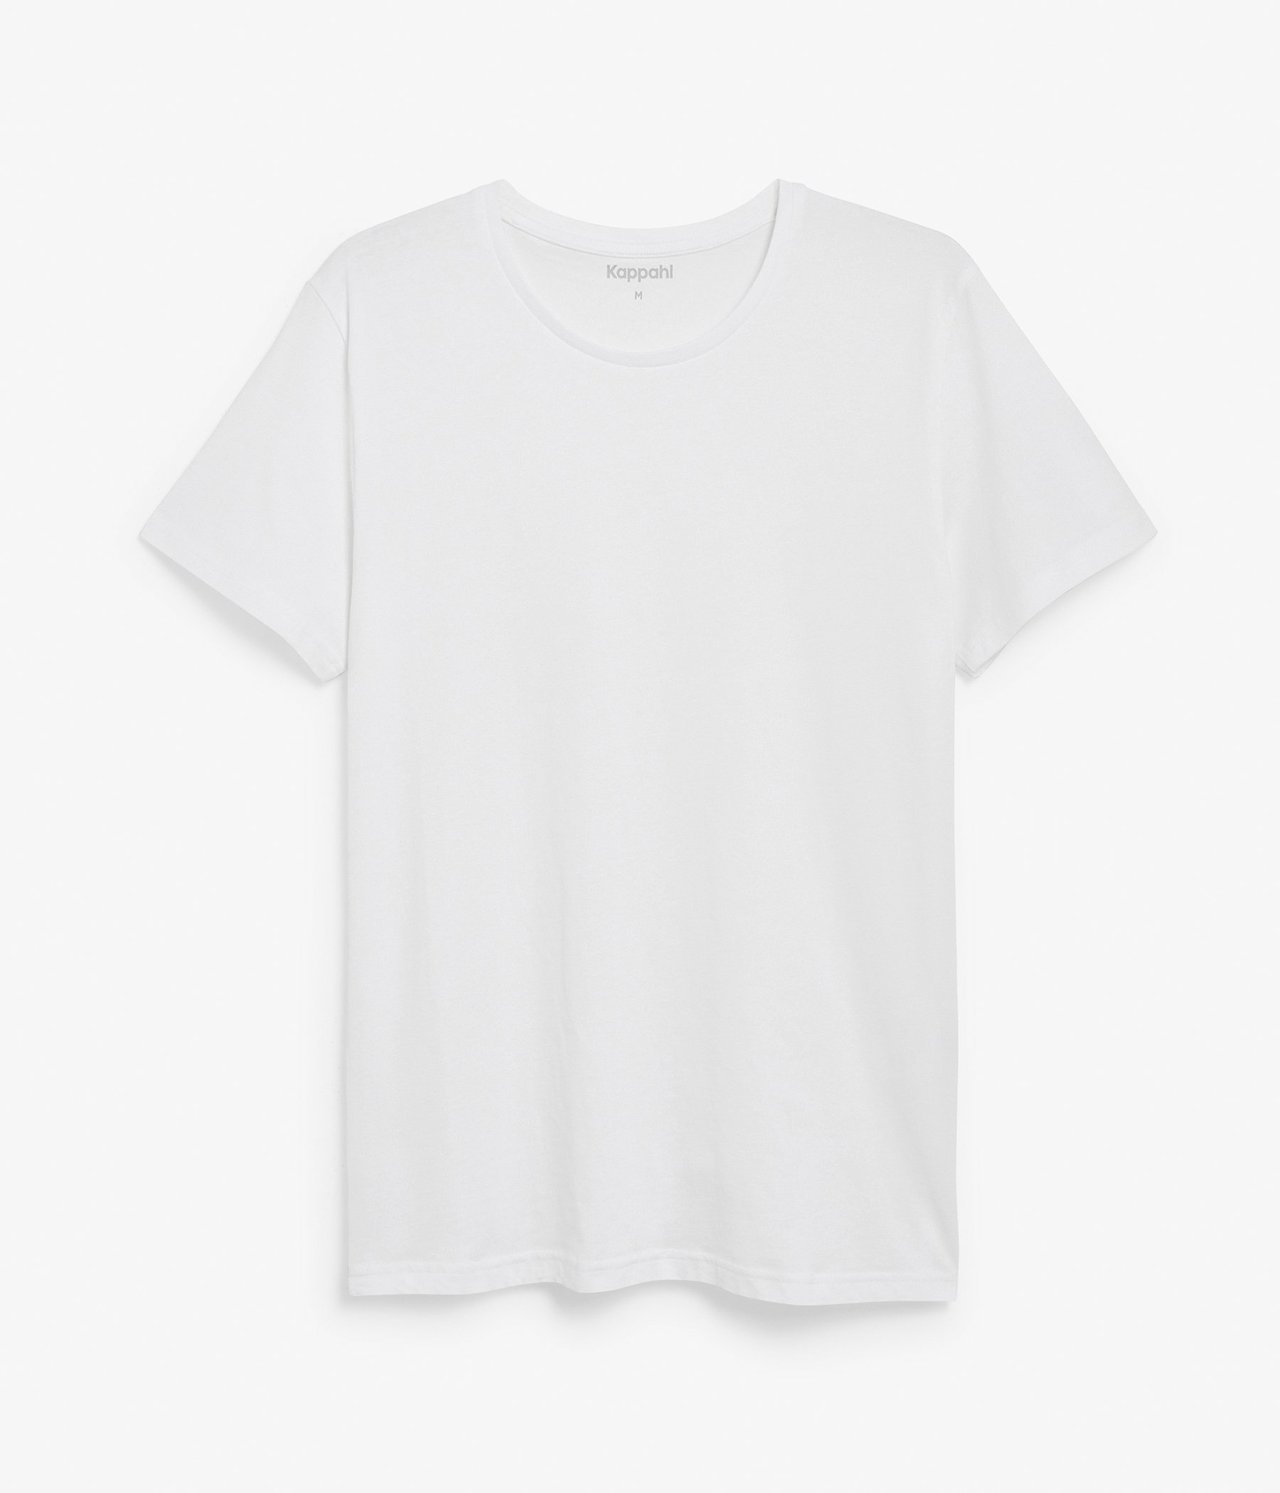 Pyöreäkauluksinen t-paita Valkoinen - null - 1